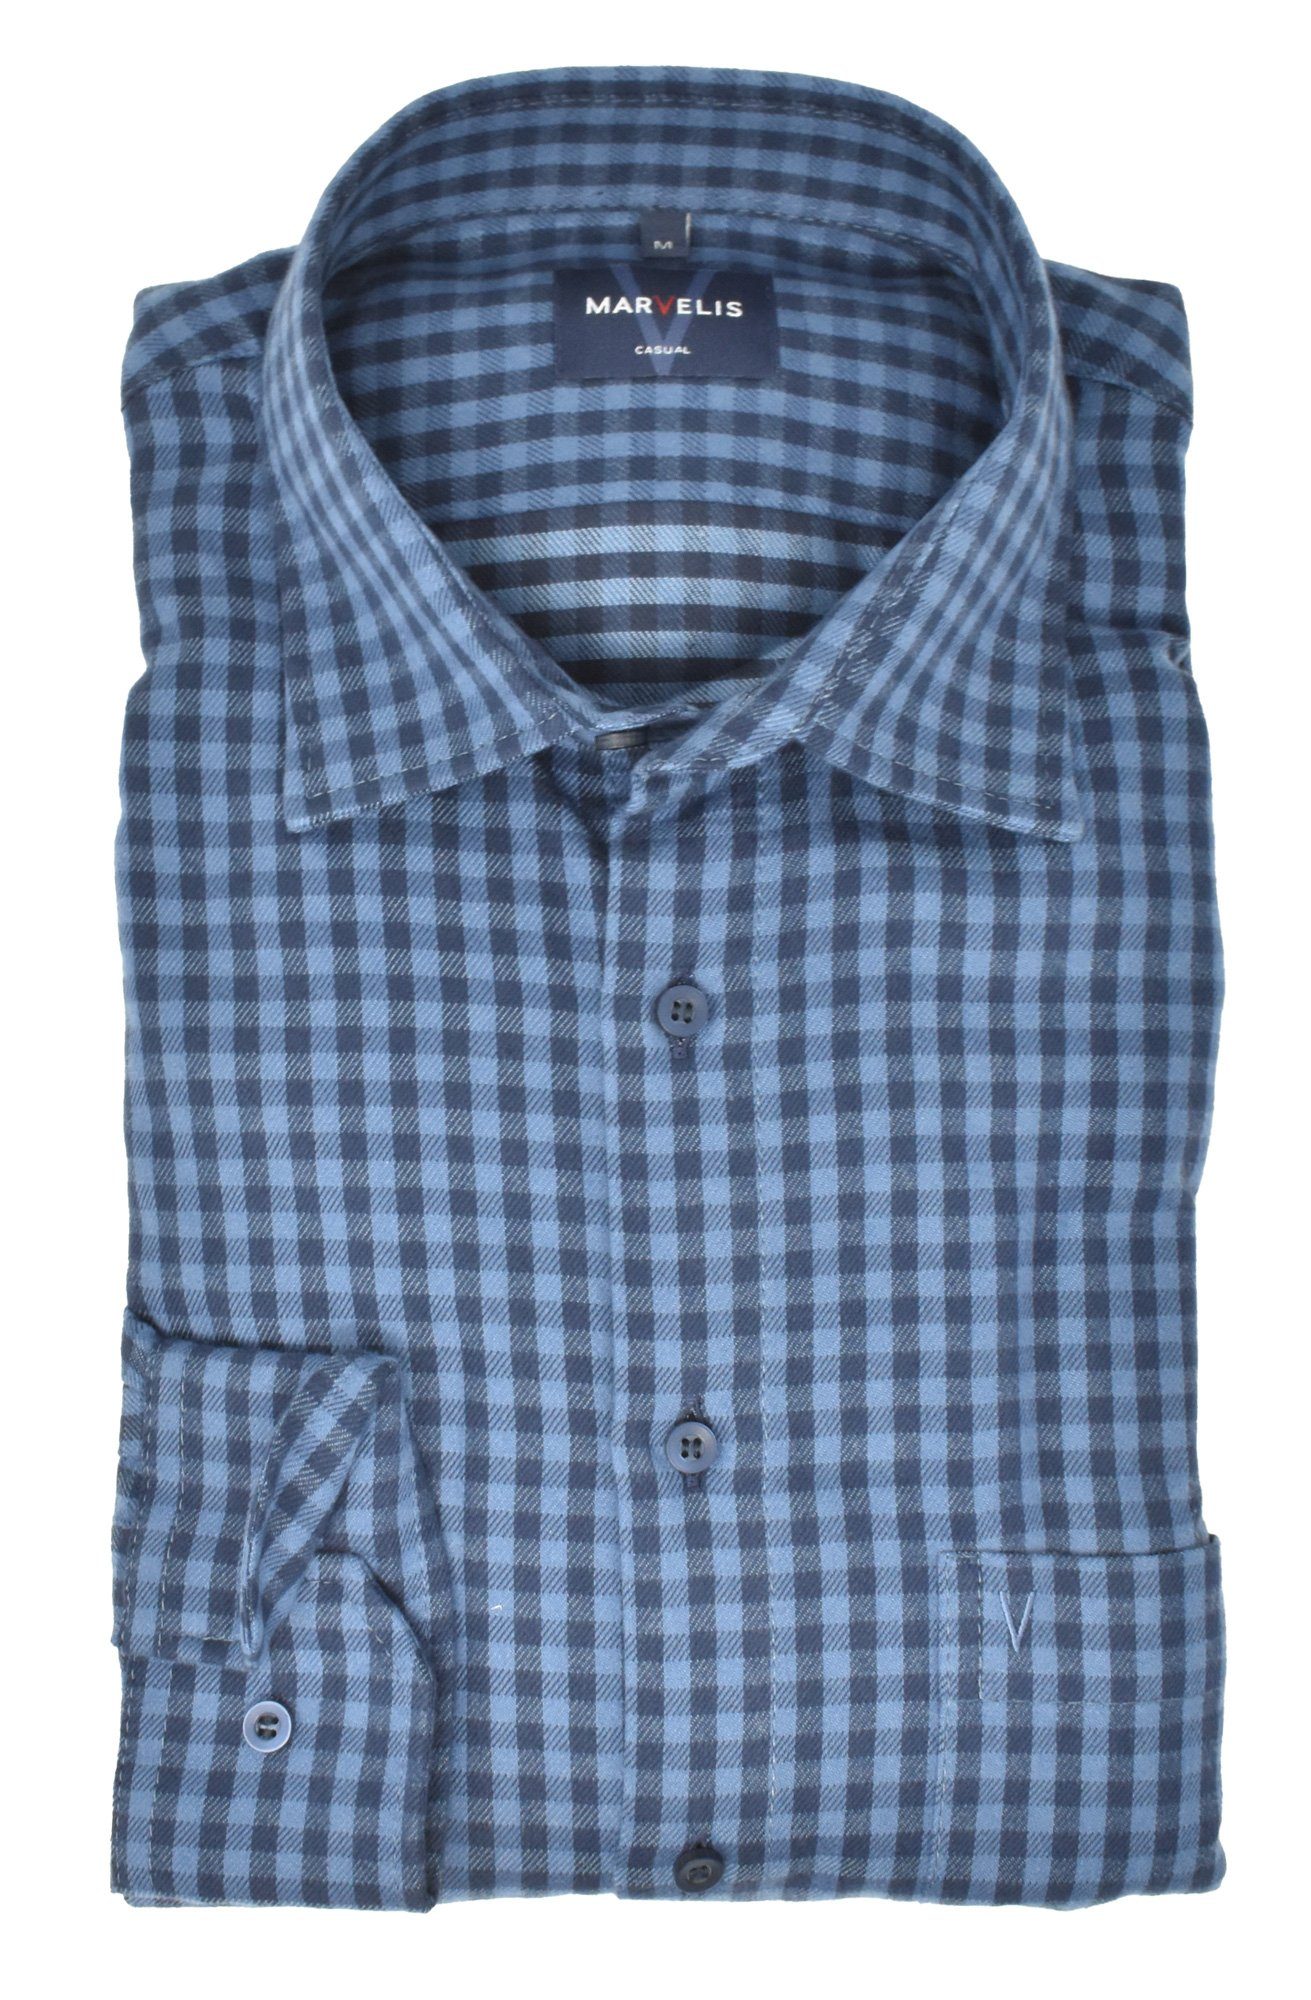 MARVELIS Langarmhemd Freizeithemd - Casual Modern Fit - Langarm - Kariert - Blau